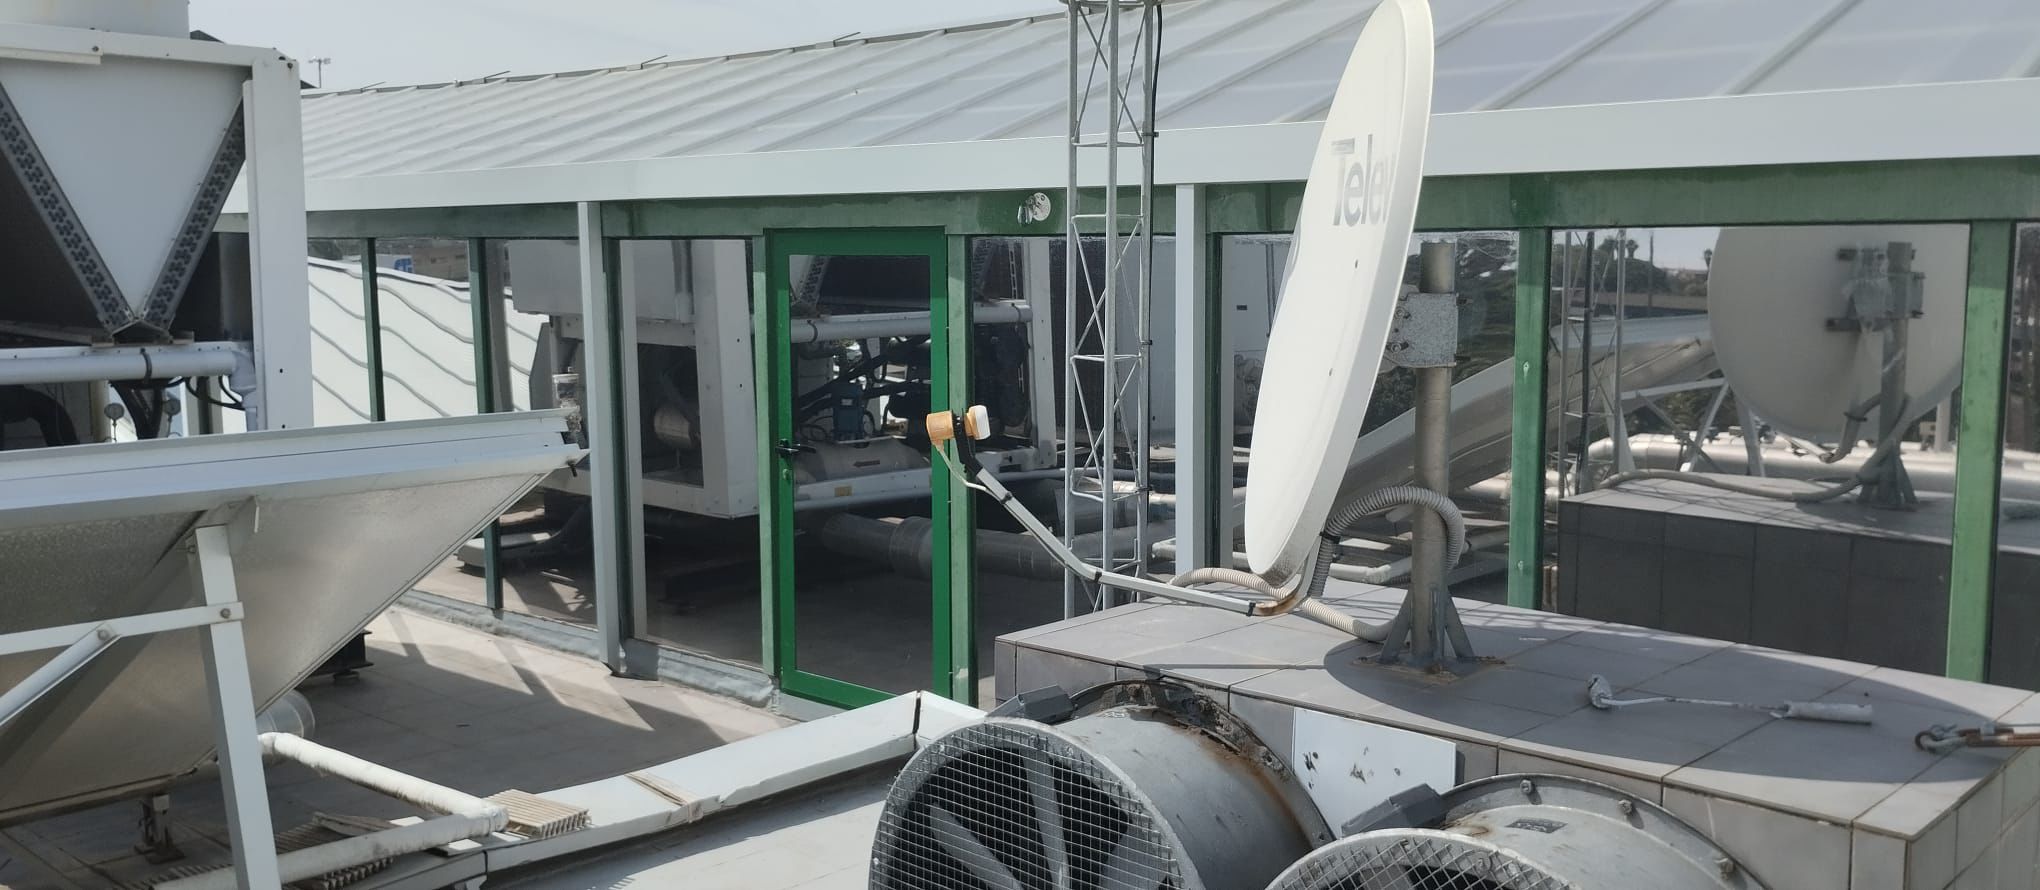 Instalación de láminas de control solar en la sede de Binter.